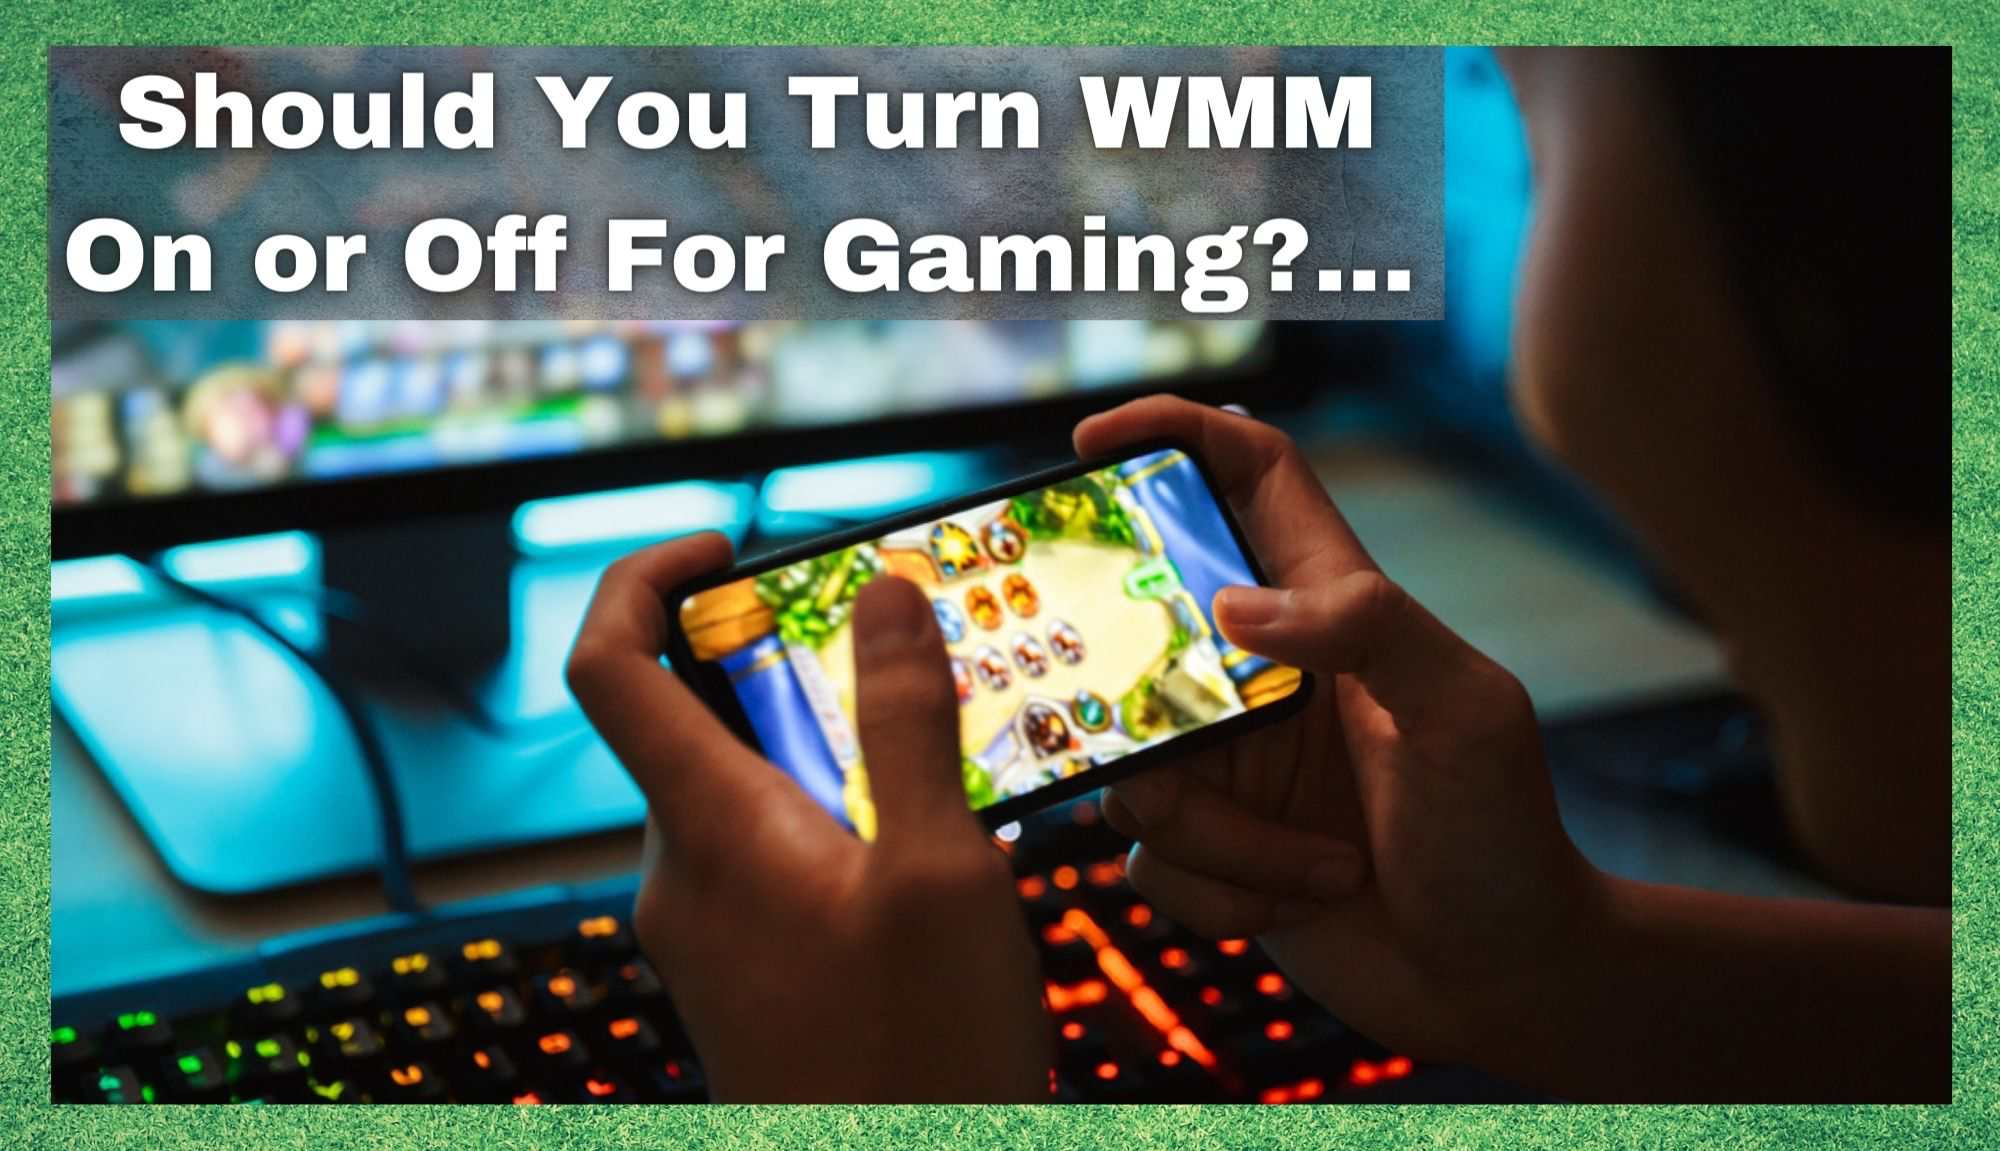 તમારે ગેમિંગ માટે WMM ચાલુ કે બંધ કરવું જોઈએ?